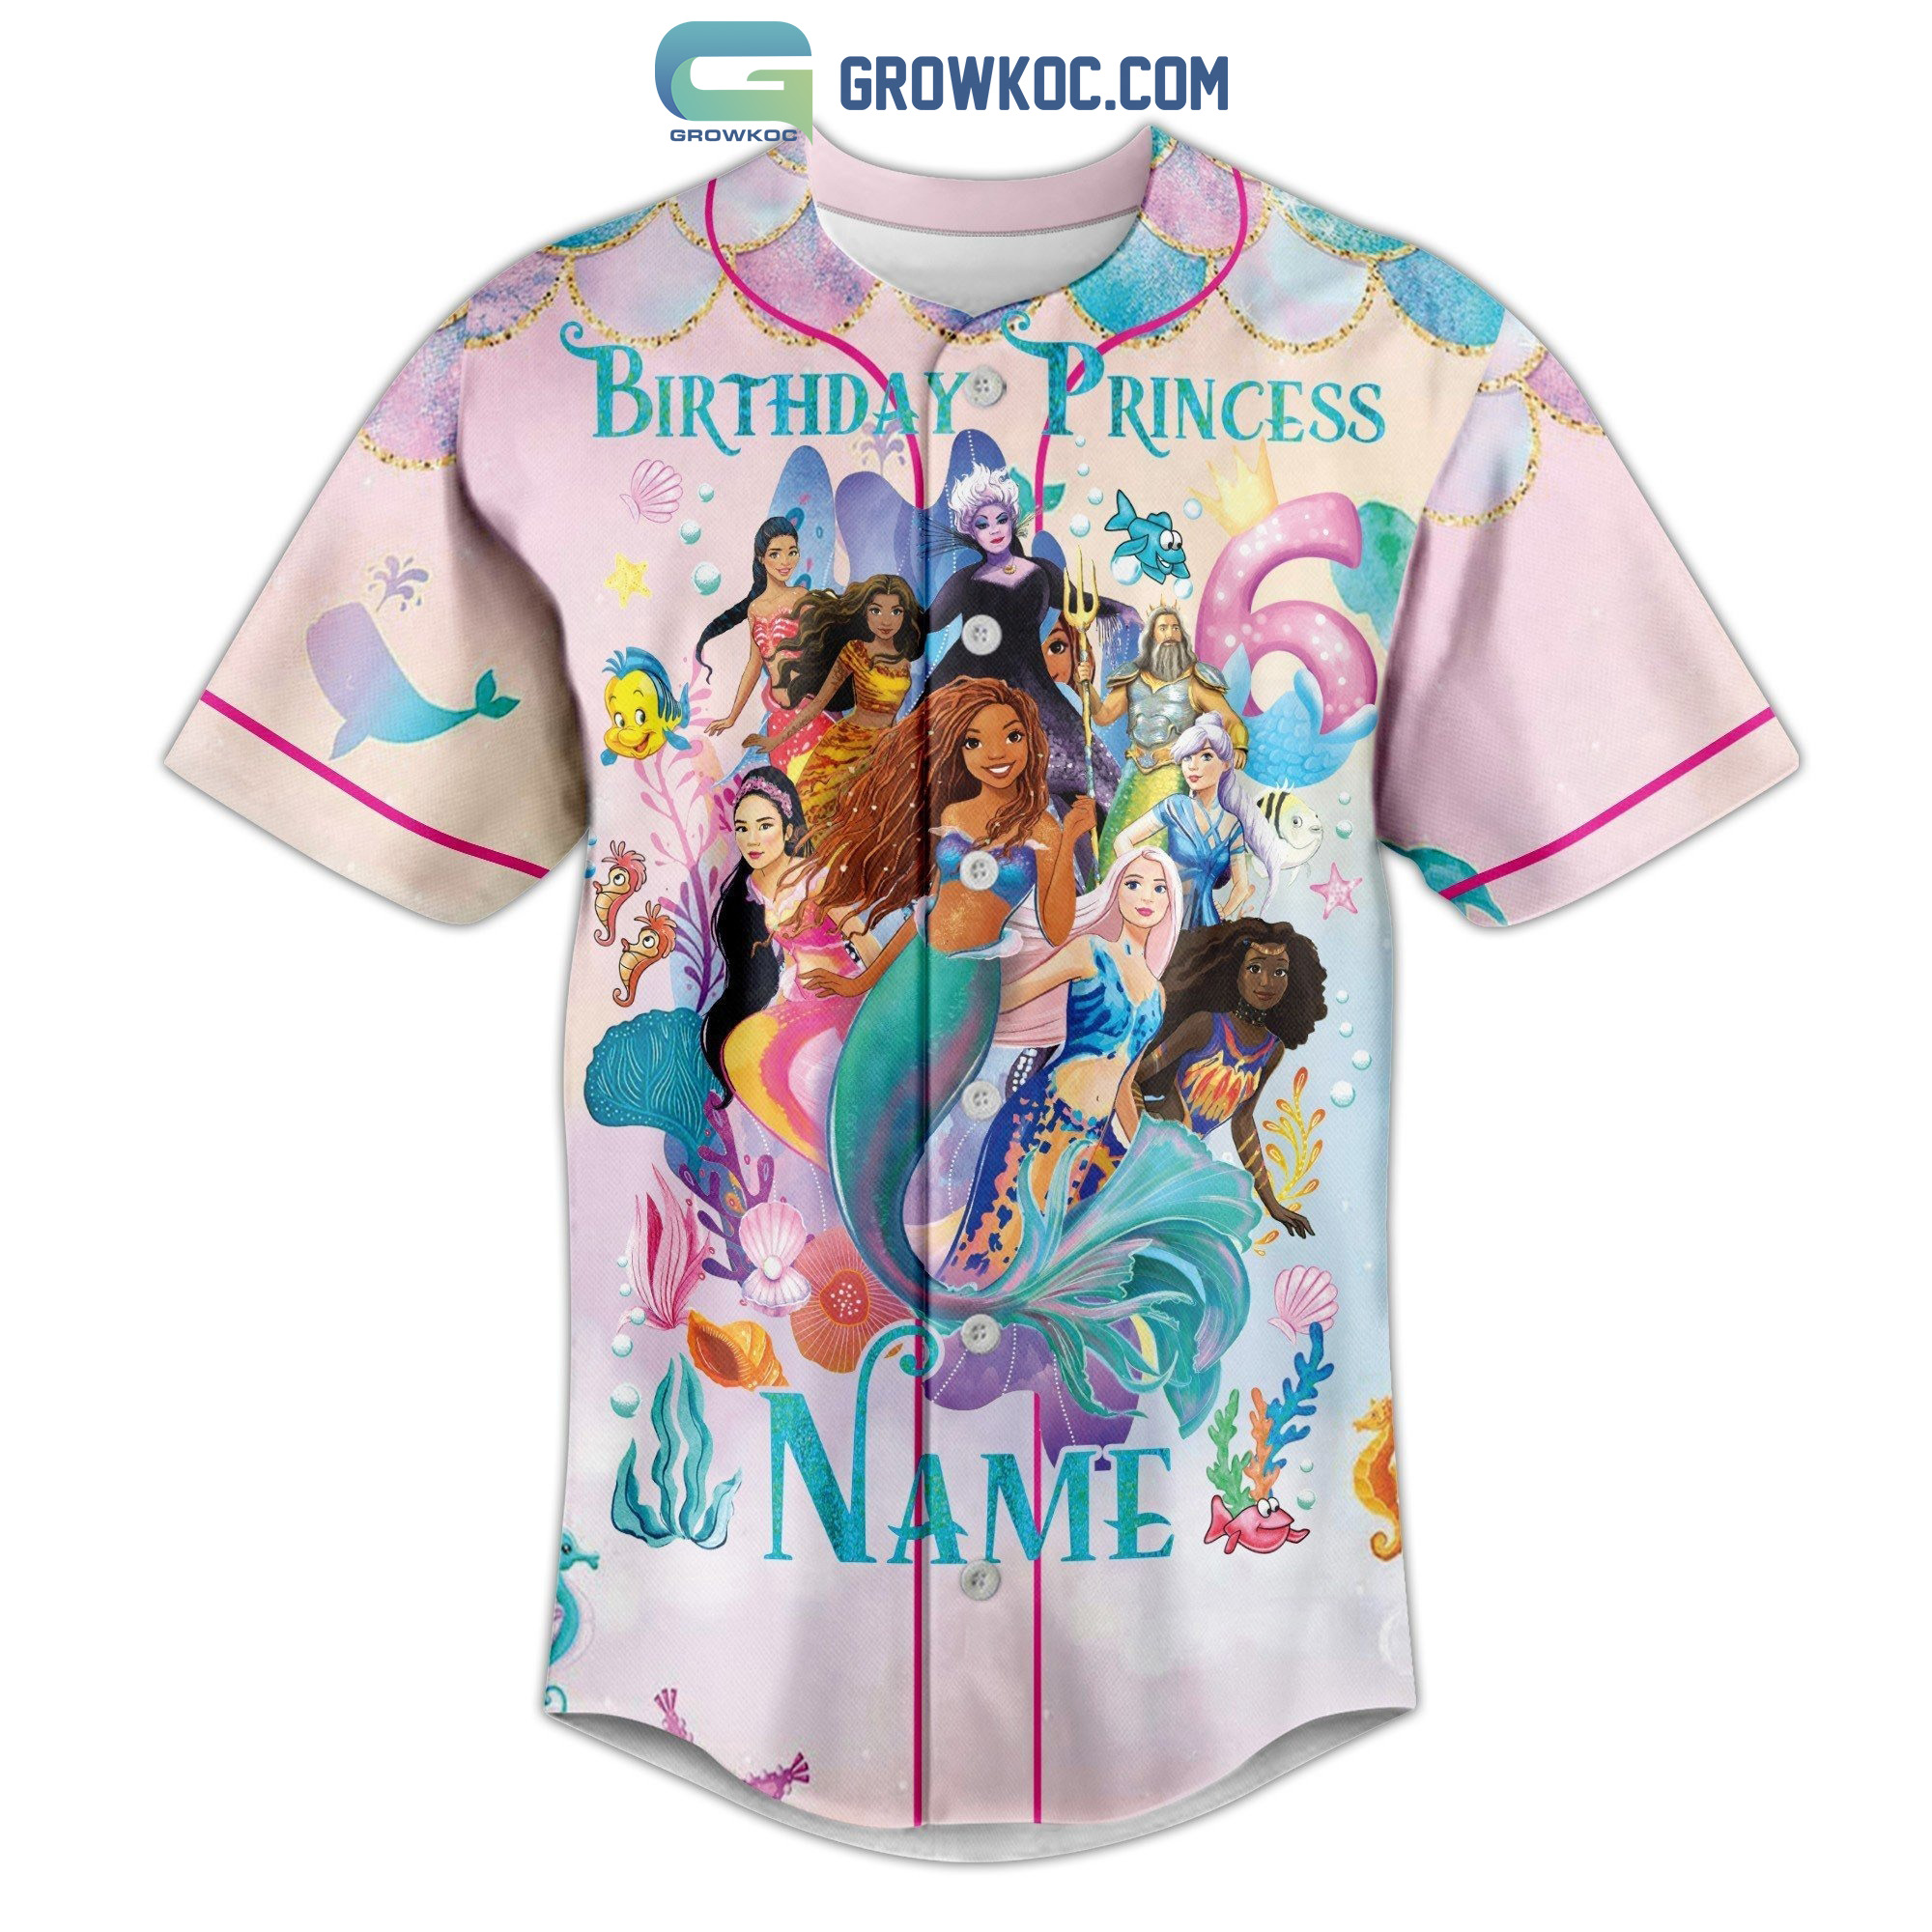 Birthday Princess Personalized Baseball Jersey